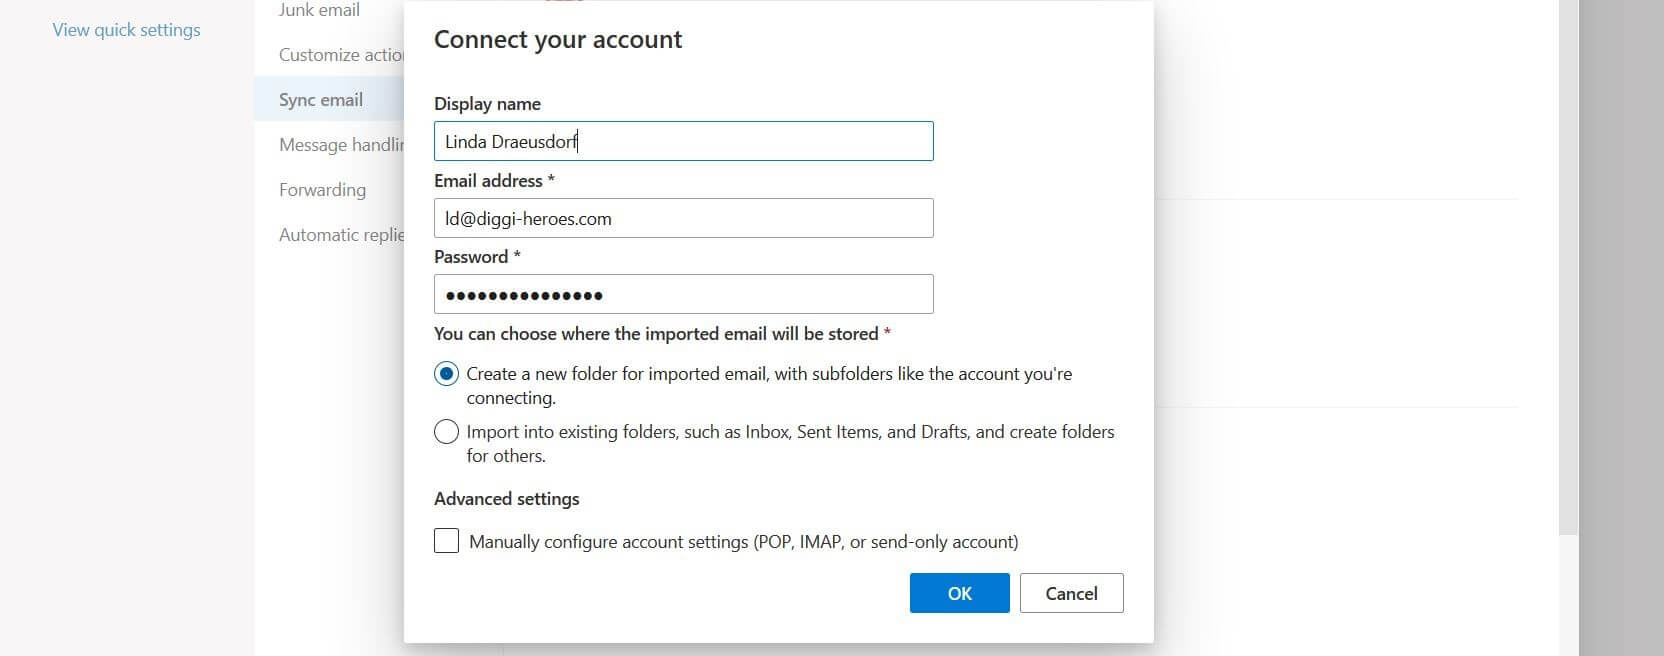 Ventana para conectar cuentas en la web de Outlook